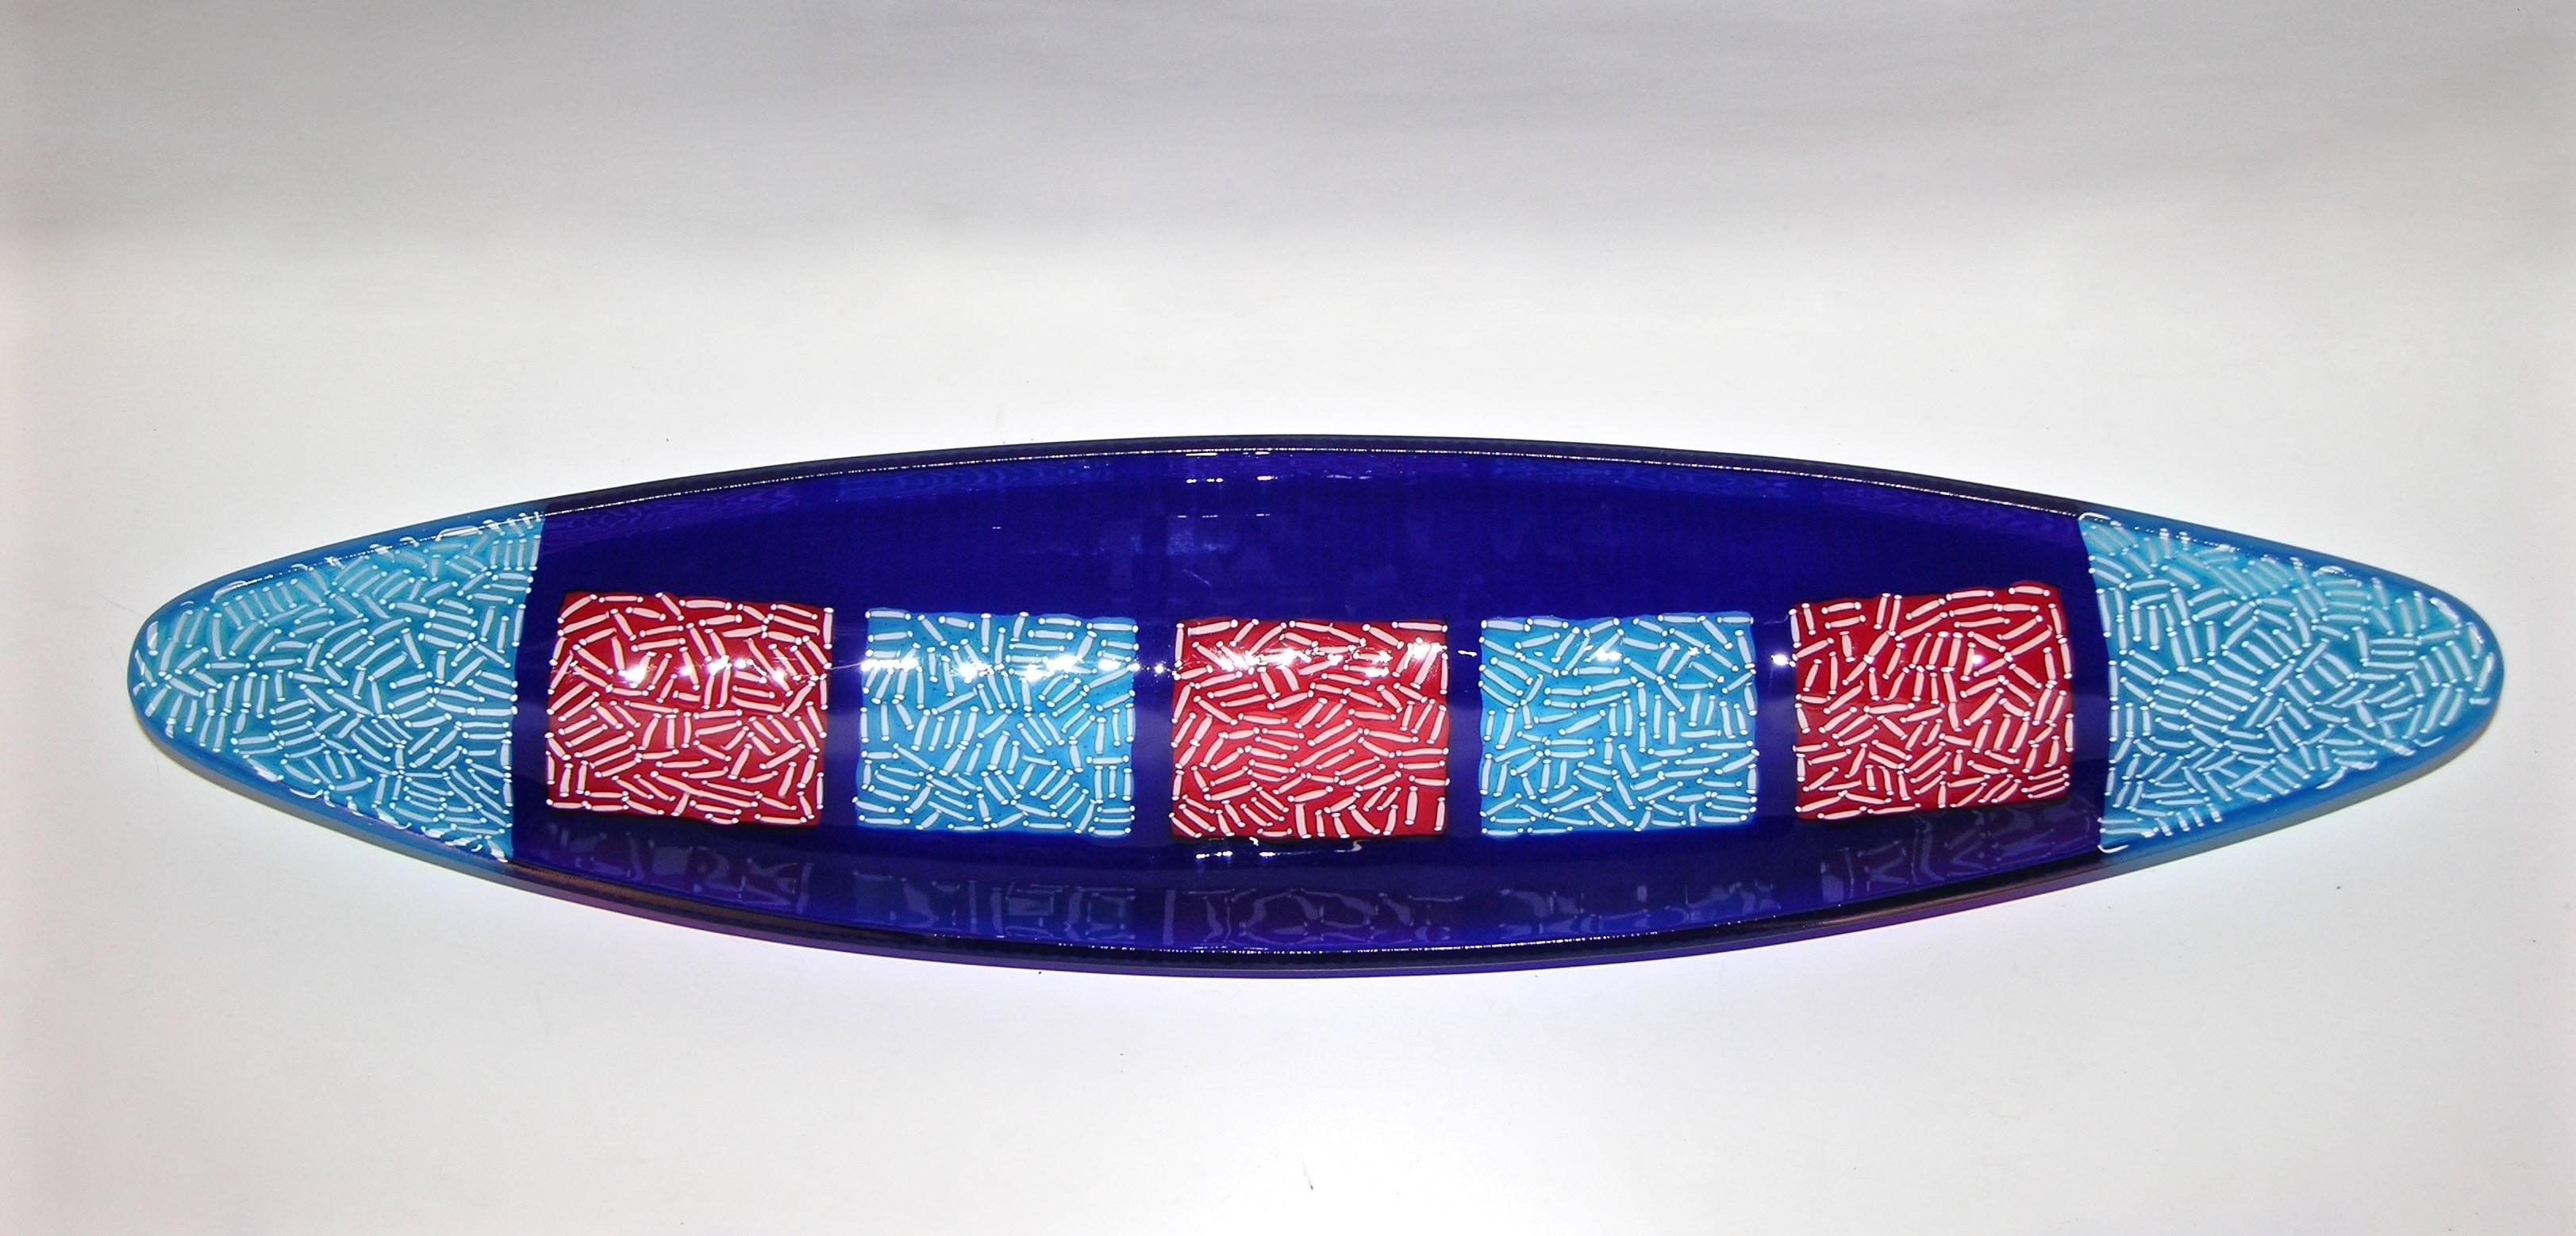 Un bol contemporain de forme allongée comme une gondole, en verre de Murano, avec un décor de mosaïque donnant une touche orientaliste, créé avec un savoir-faire de la plus haute qualité en utilisant la technique de fusion, exclusive pour Cosulich